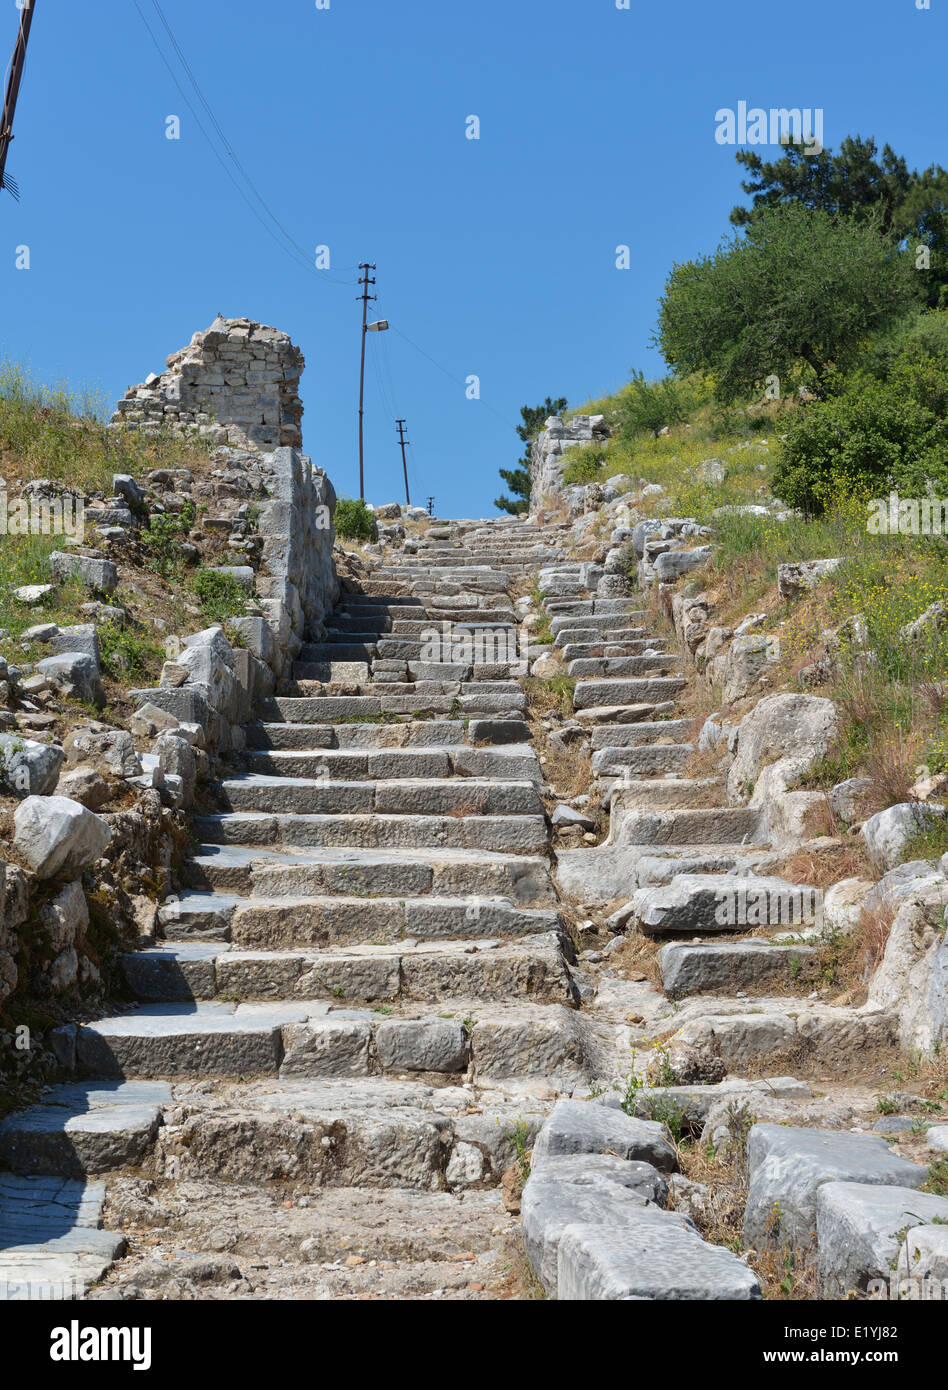 Main stairway with gutter, Priene,Turkey 140415 60657 Stock Photo